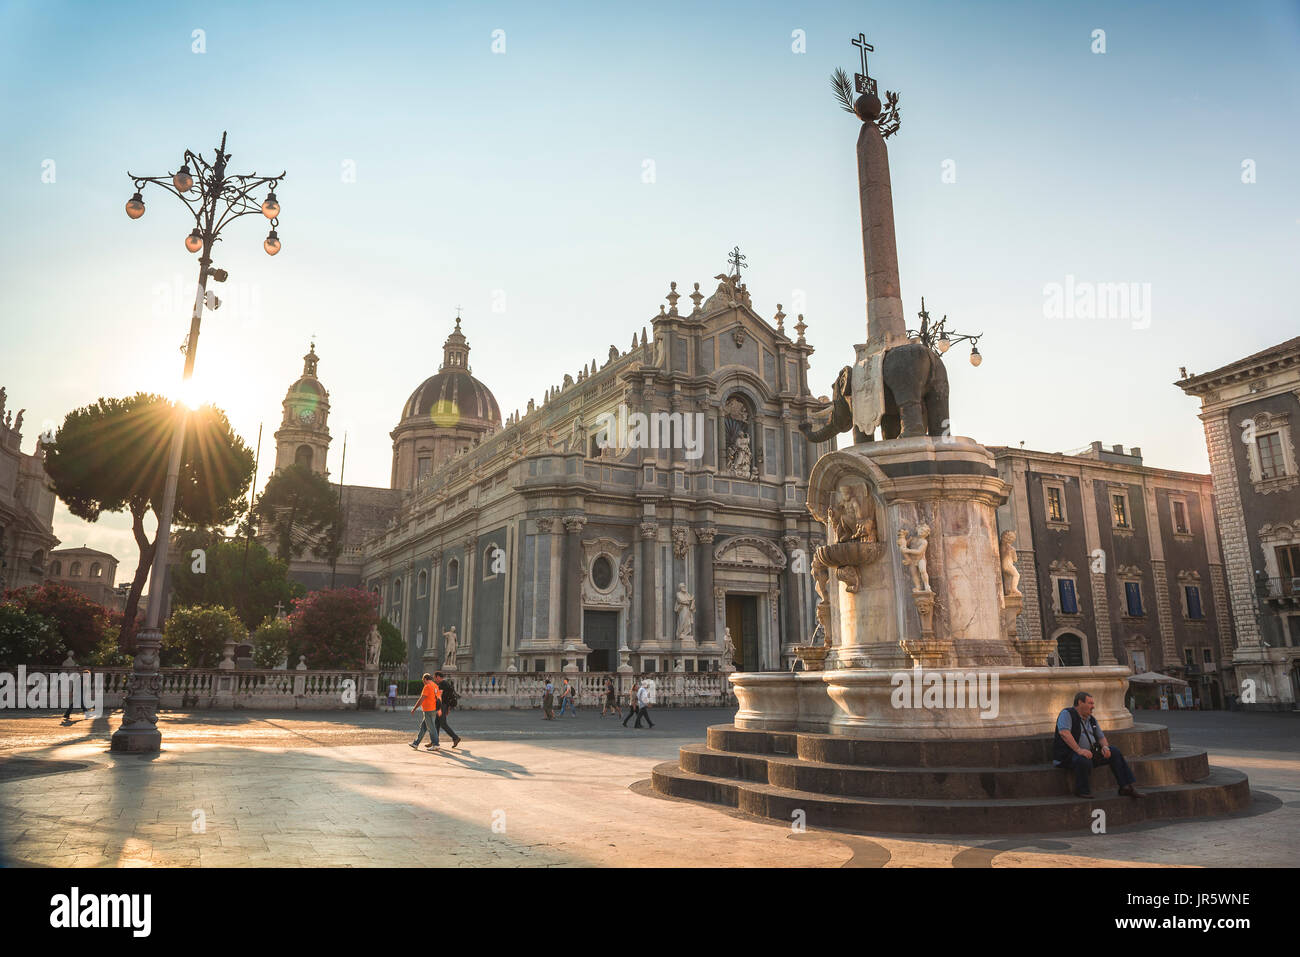 Catane Sicile piazza, vue sur la Piazza del Duomo avec la fontaine à éléphants (Fontana dell'Elefante) dans le centre de la ville de Catane, Sicile. Banque D'Images